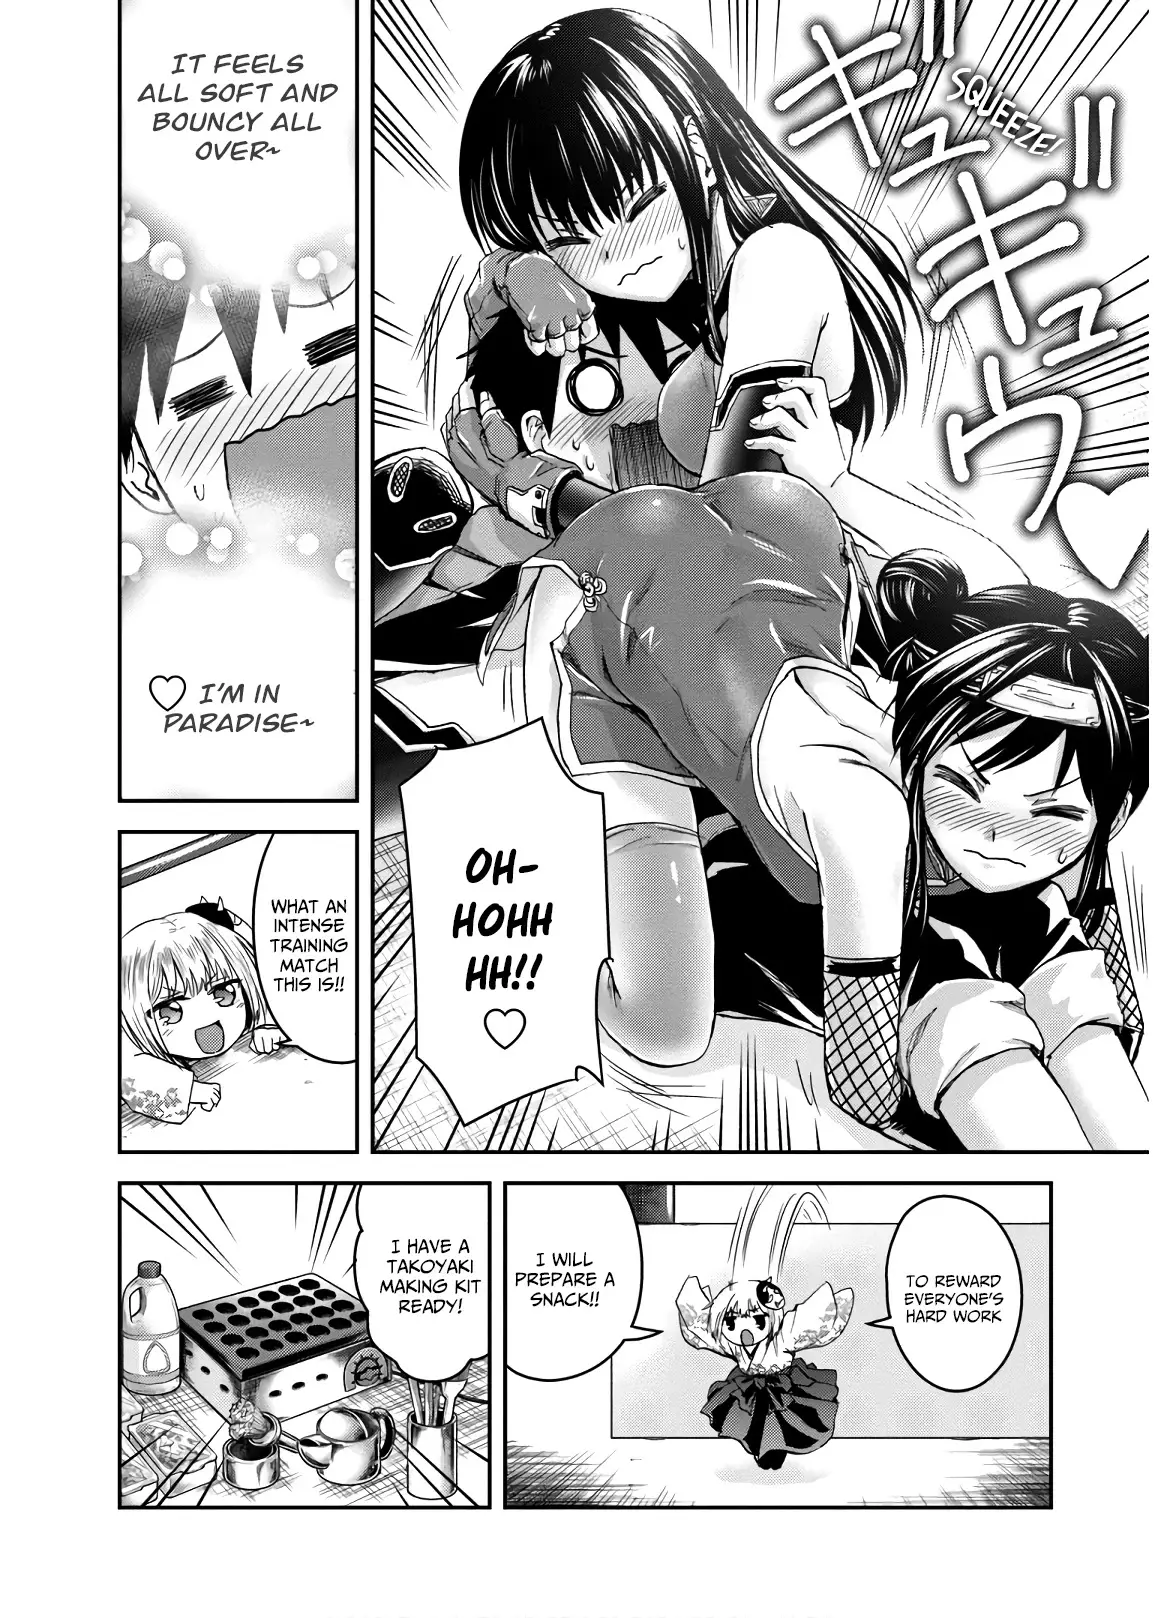 Shinobi Kill - 7 page 22